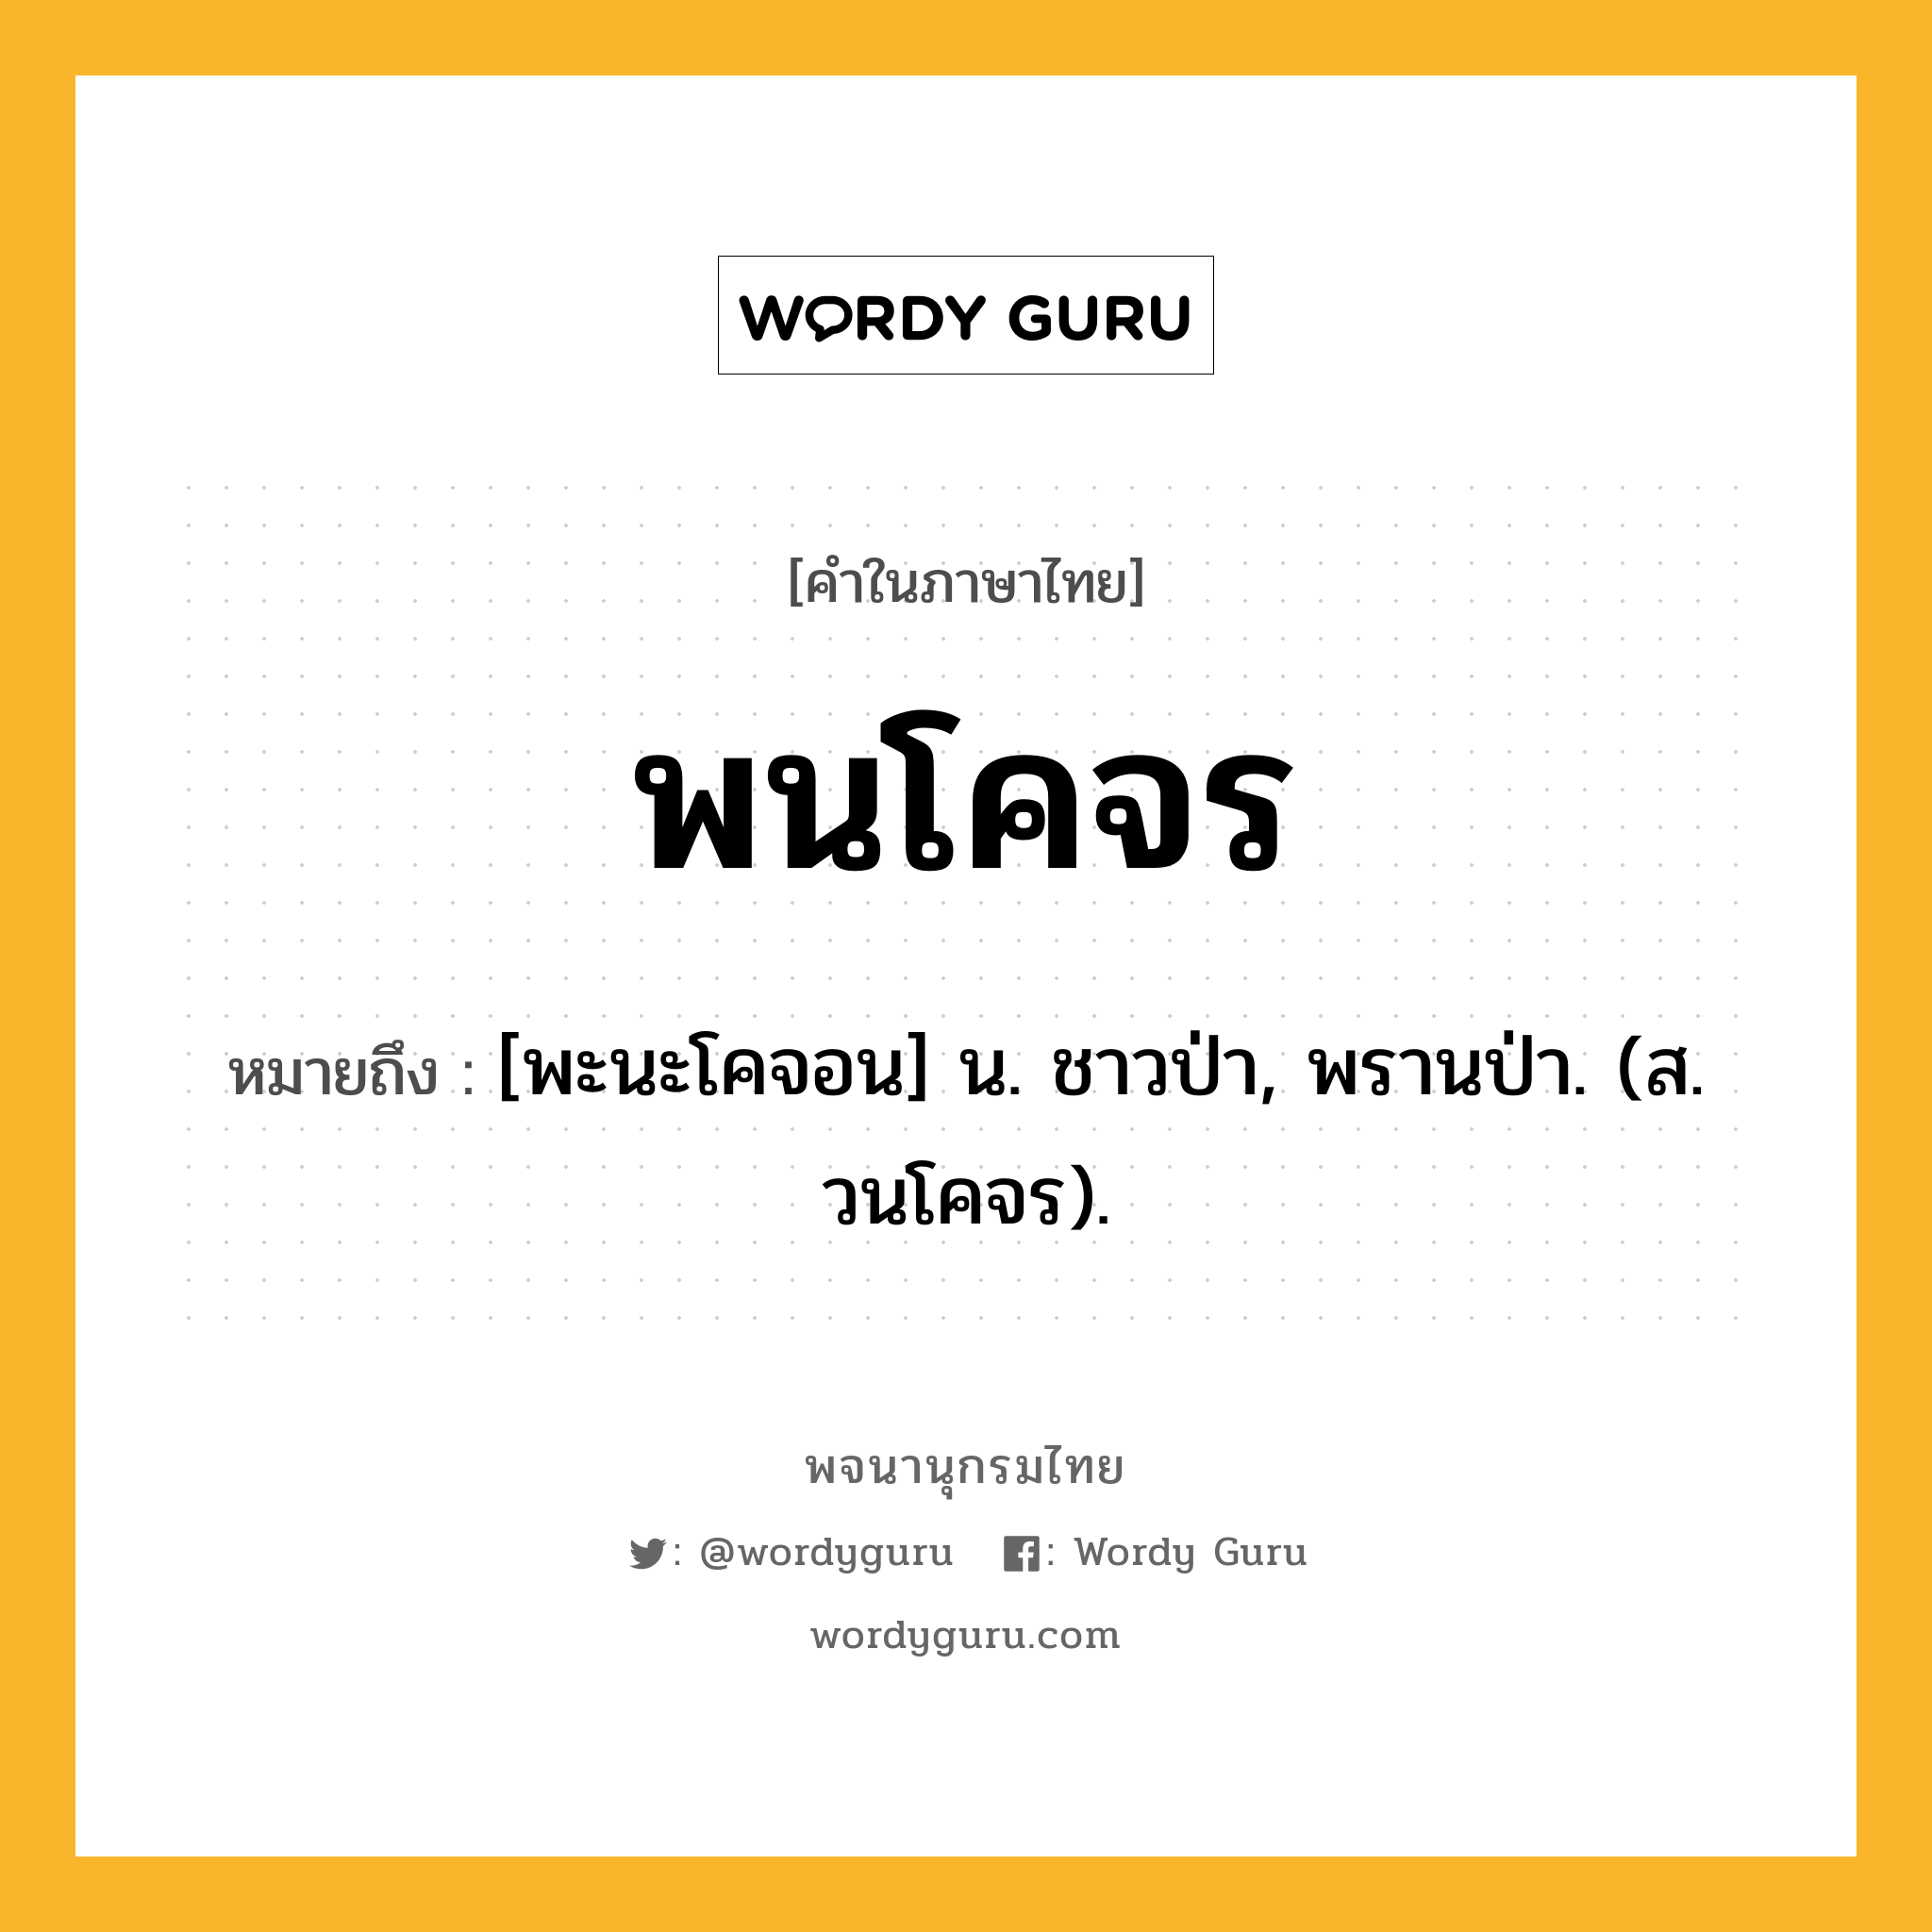 พนโคจร หมายถึงอะไร?, คำในภาษาไทย พนโคจร หมายถึง [พะนะโคจอน] น. ชาวป่า, พรานป่า. (ส. วนโคจร).